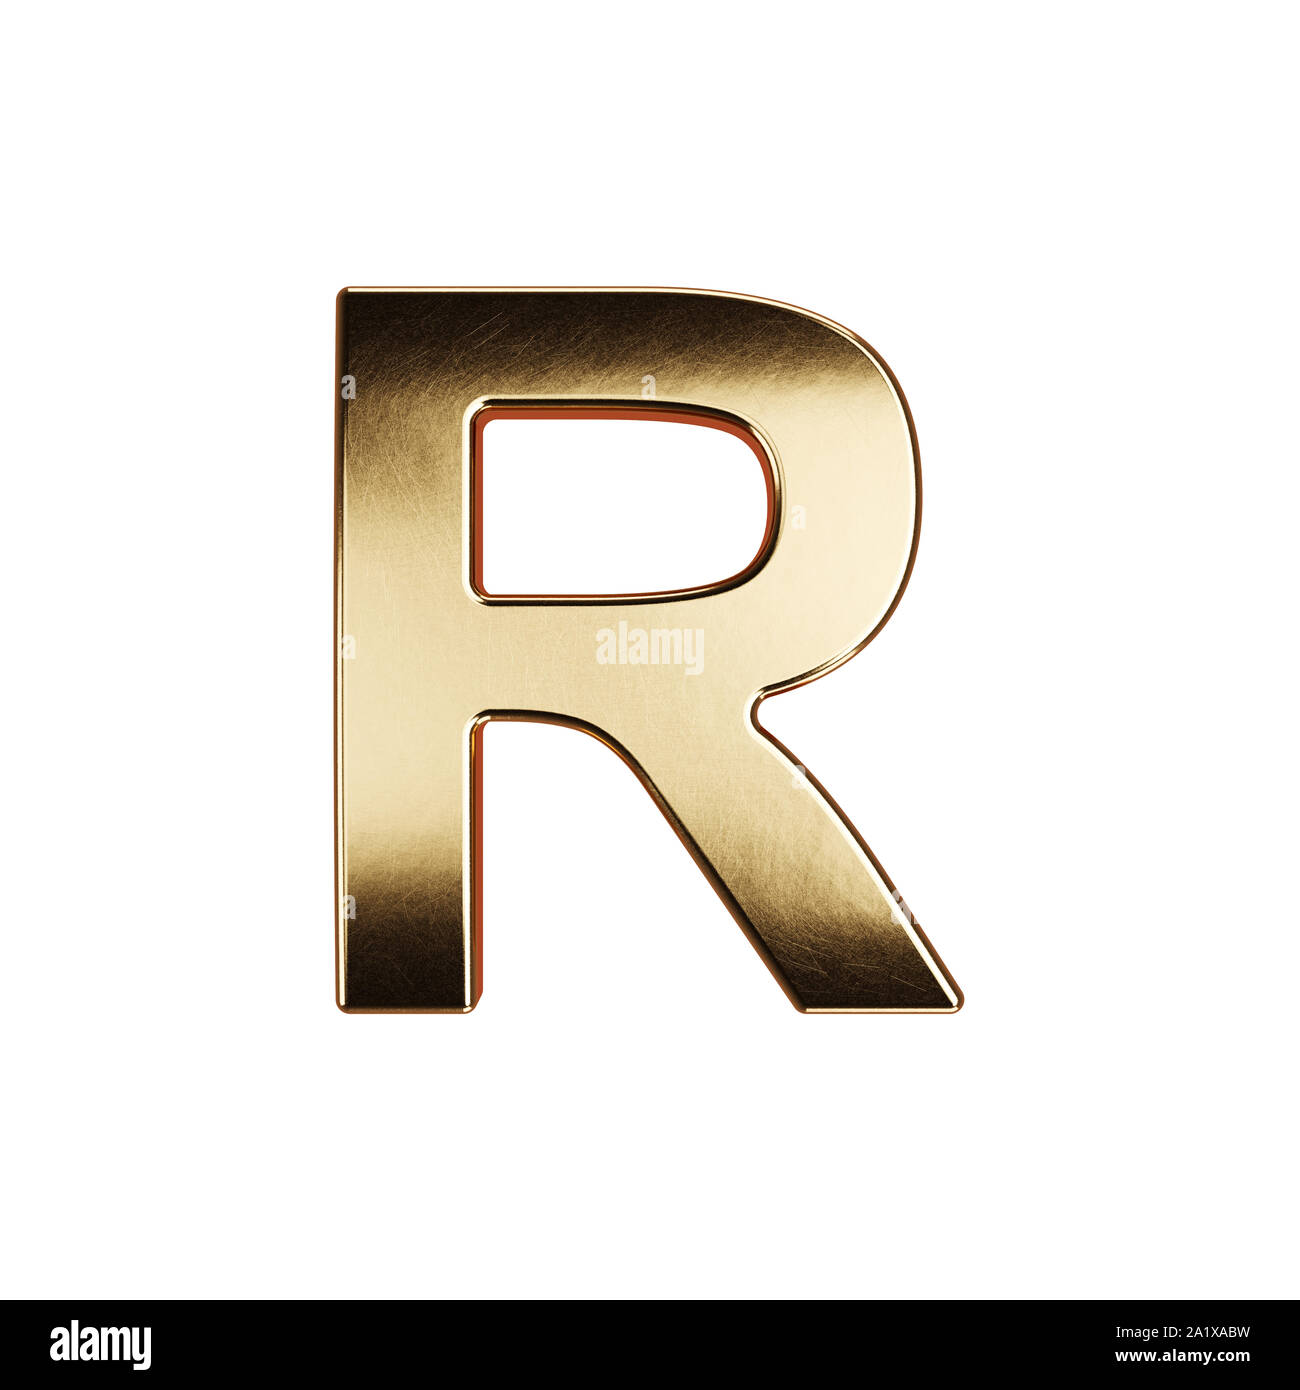 3d render of golden alphabet letter simbol - R. Isolated on white background Stock Photo